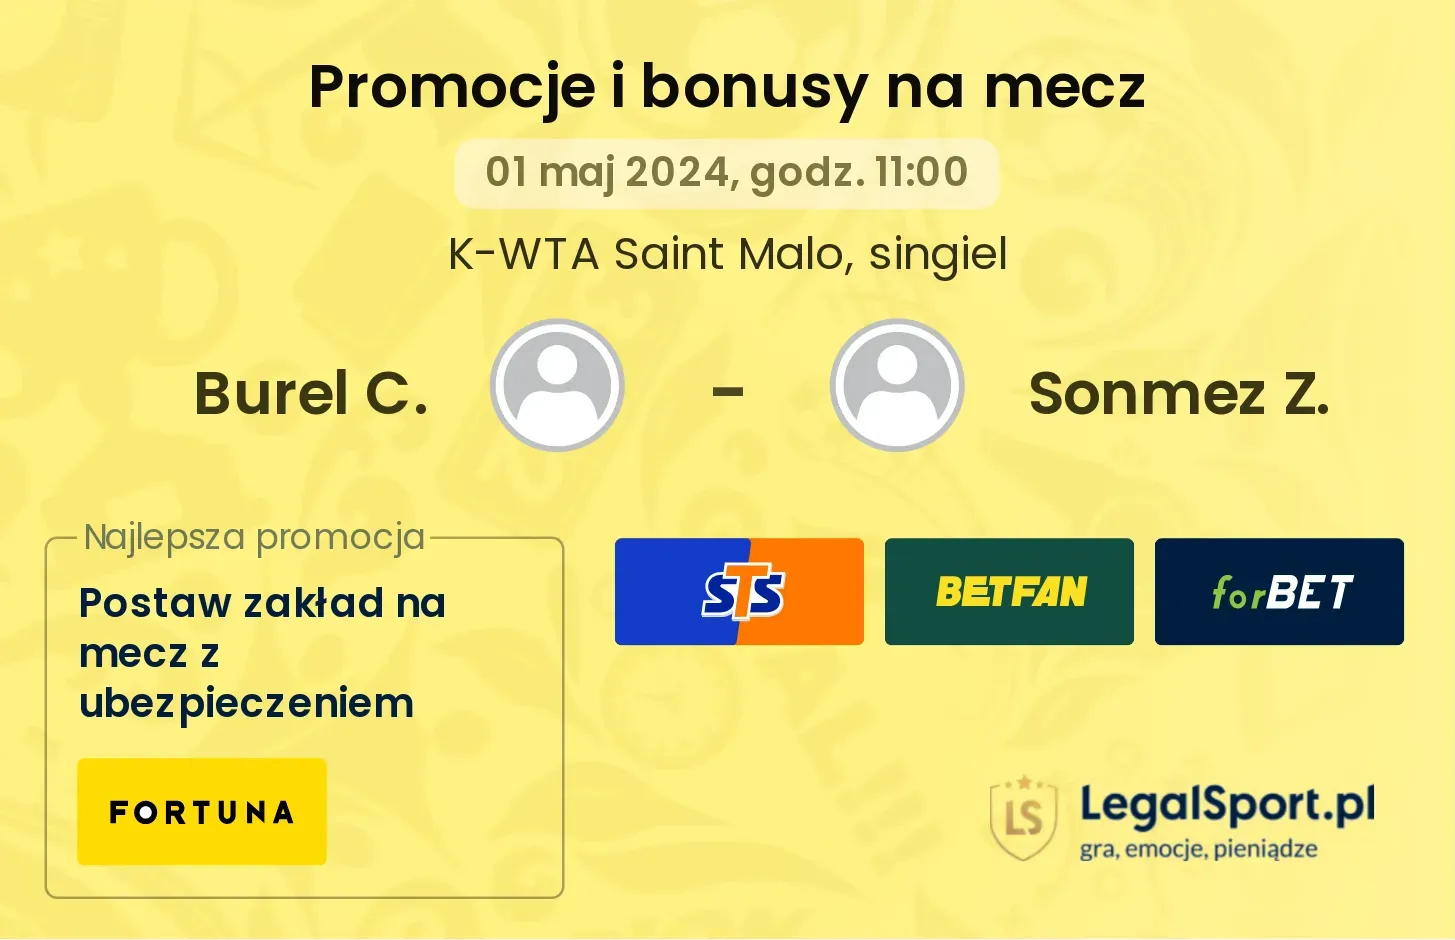 Burel C. - Sonmez Z. promocje bonusy na mecz